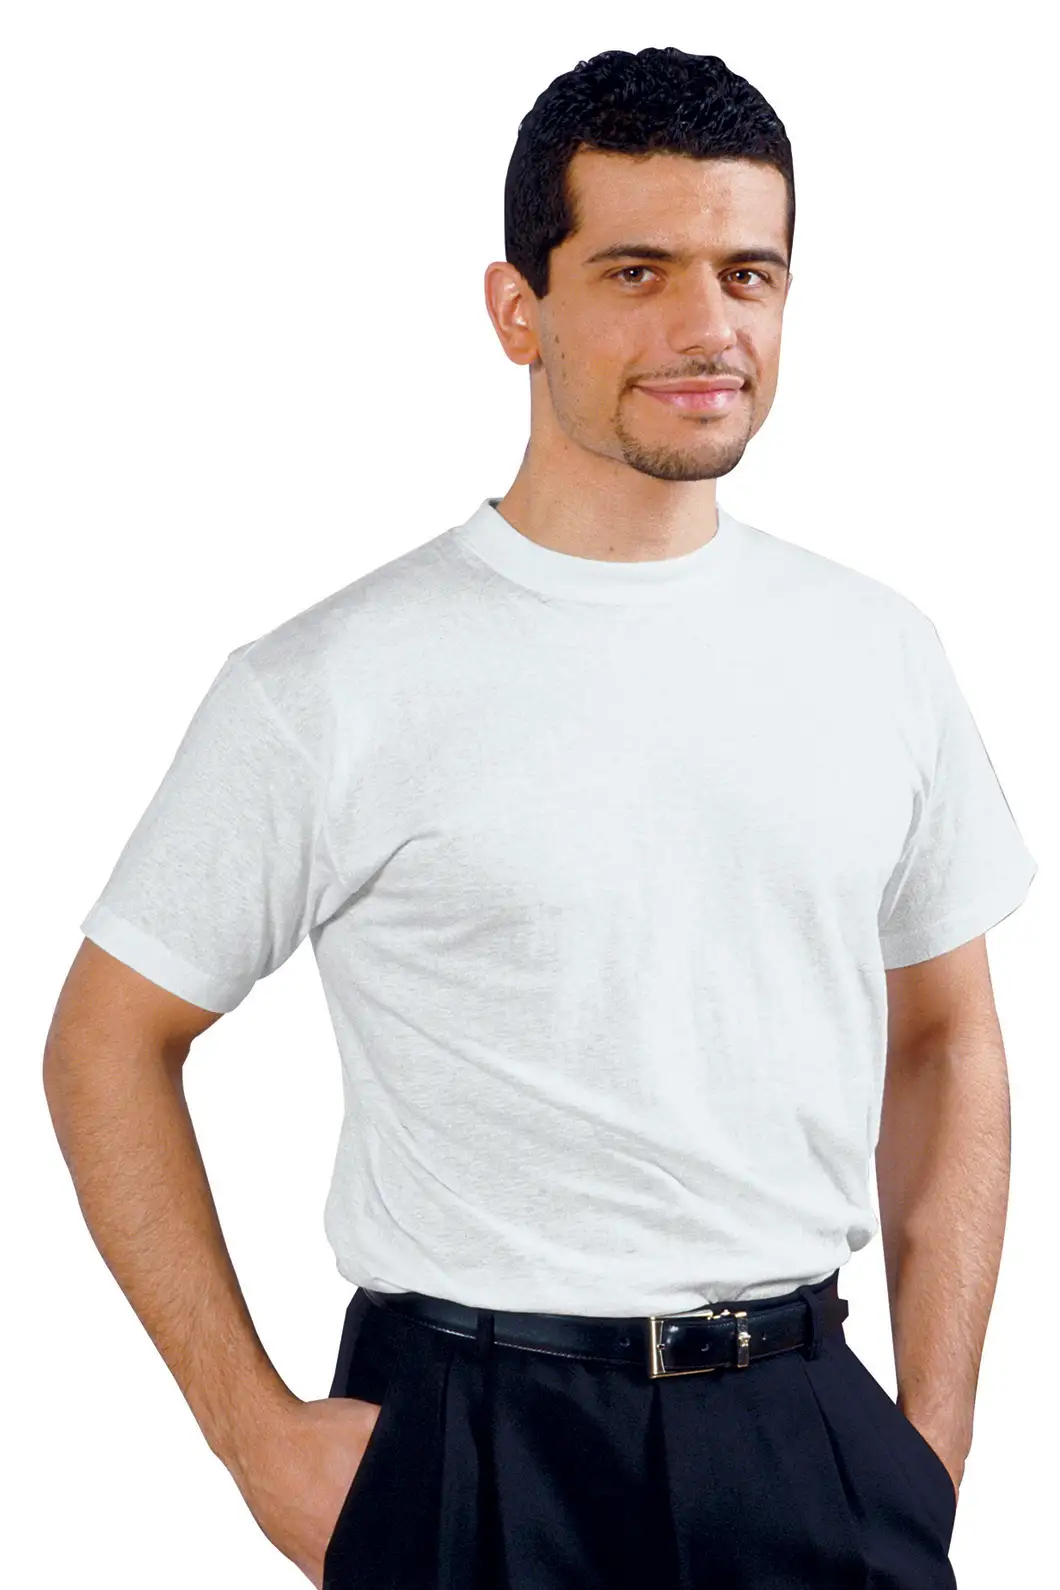 T-Shirt da Lavoro Personalizzata per Settori Alberghiero, Sanitario, Industria e Servizi - Isacco